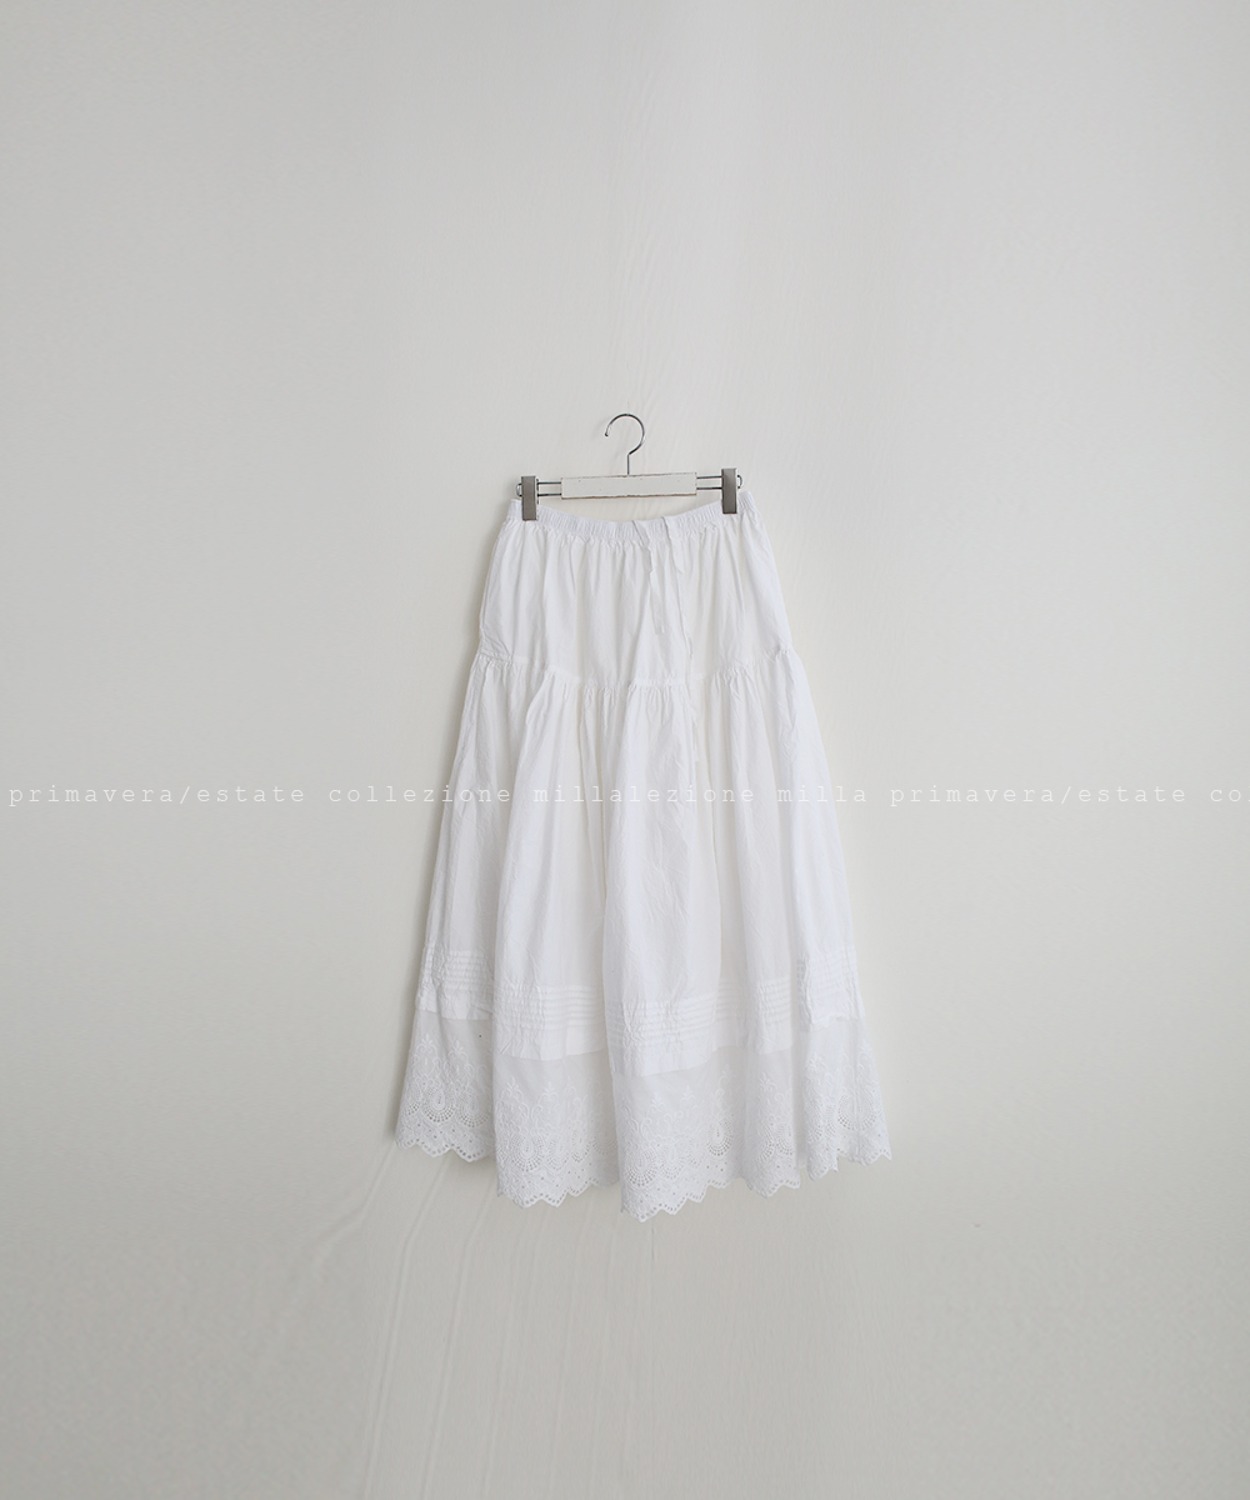 N°039 skirt